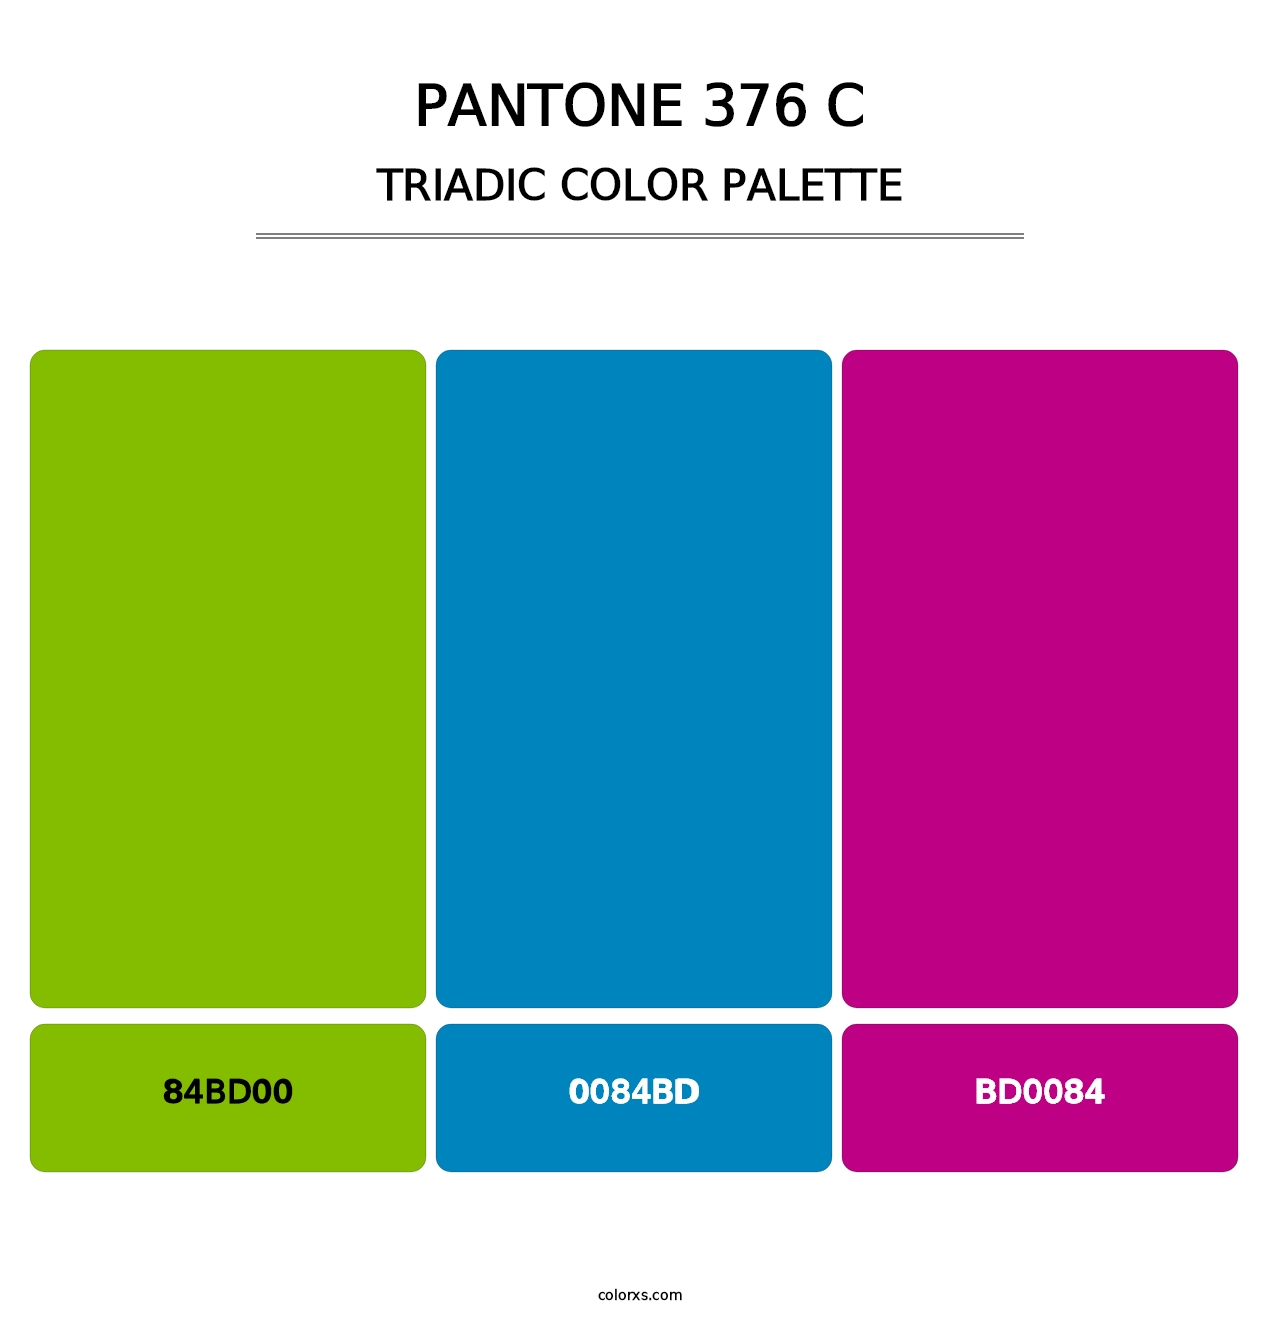 PANTONE 376 C - Triadic Color Palette